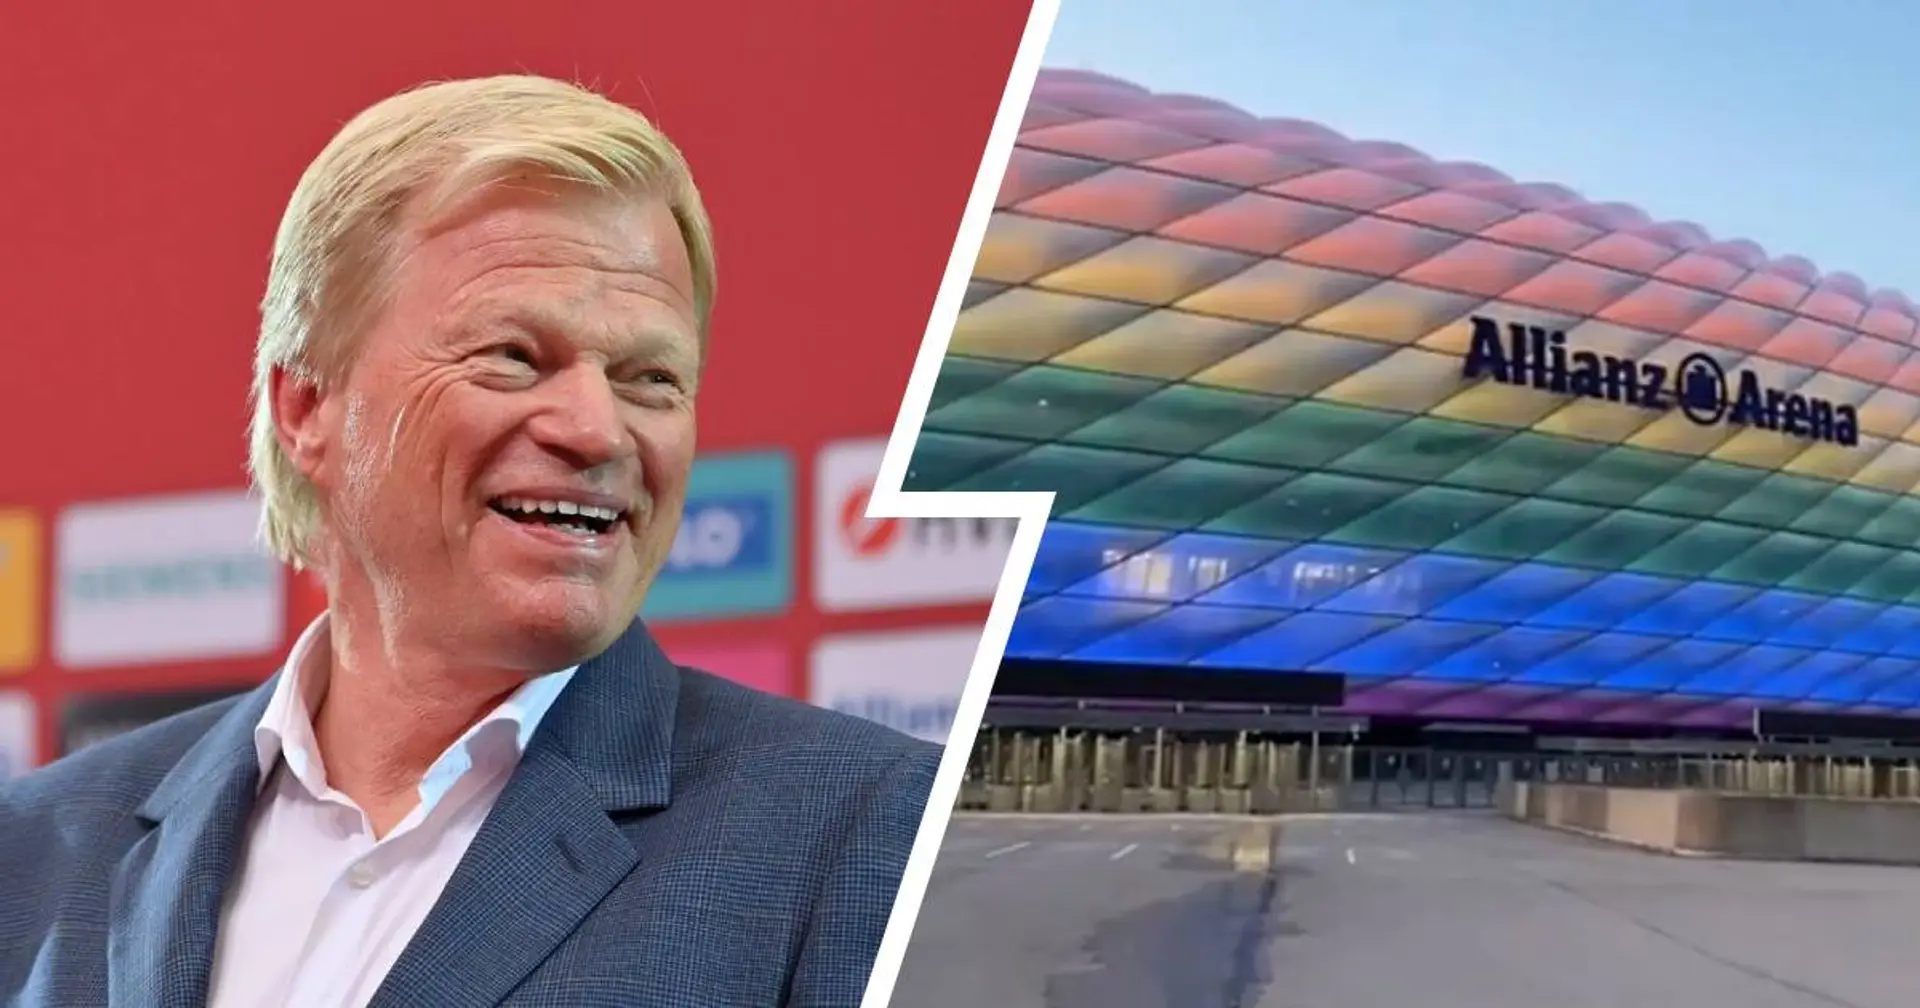 "Licht an!": Heute Abend erstrahlt die Allianz Arena in Regenbogenfarben, was Oliver Kahn sehr freut